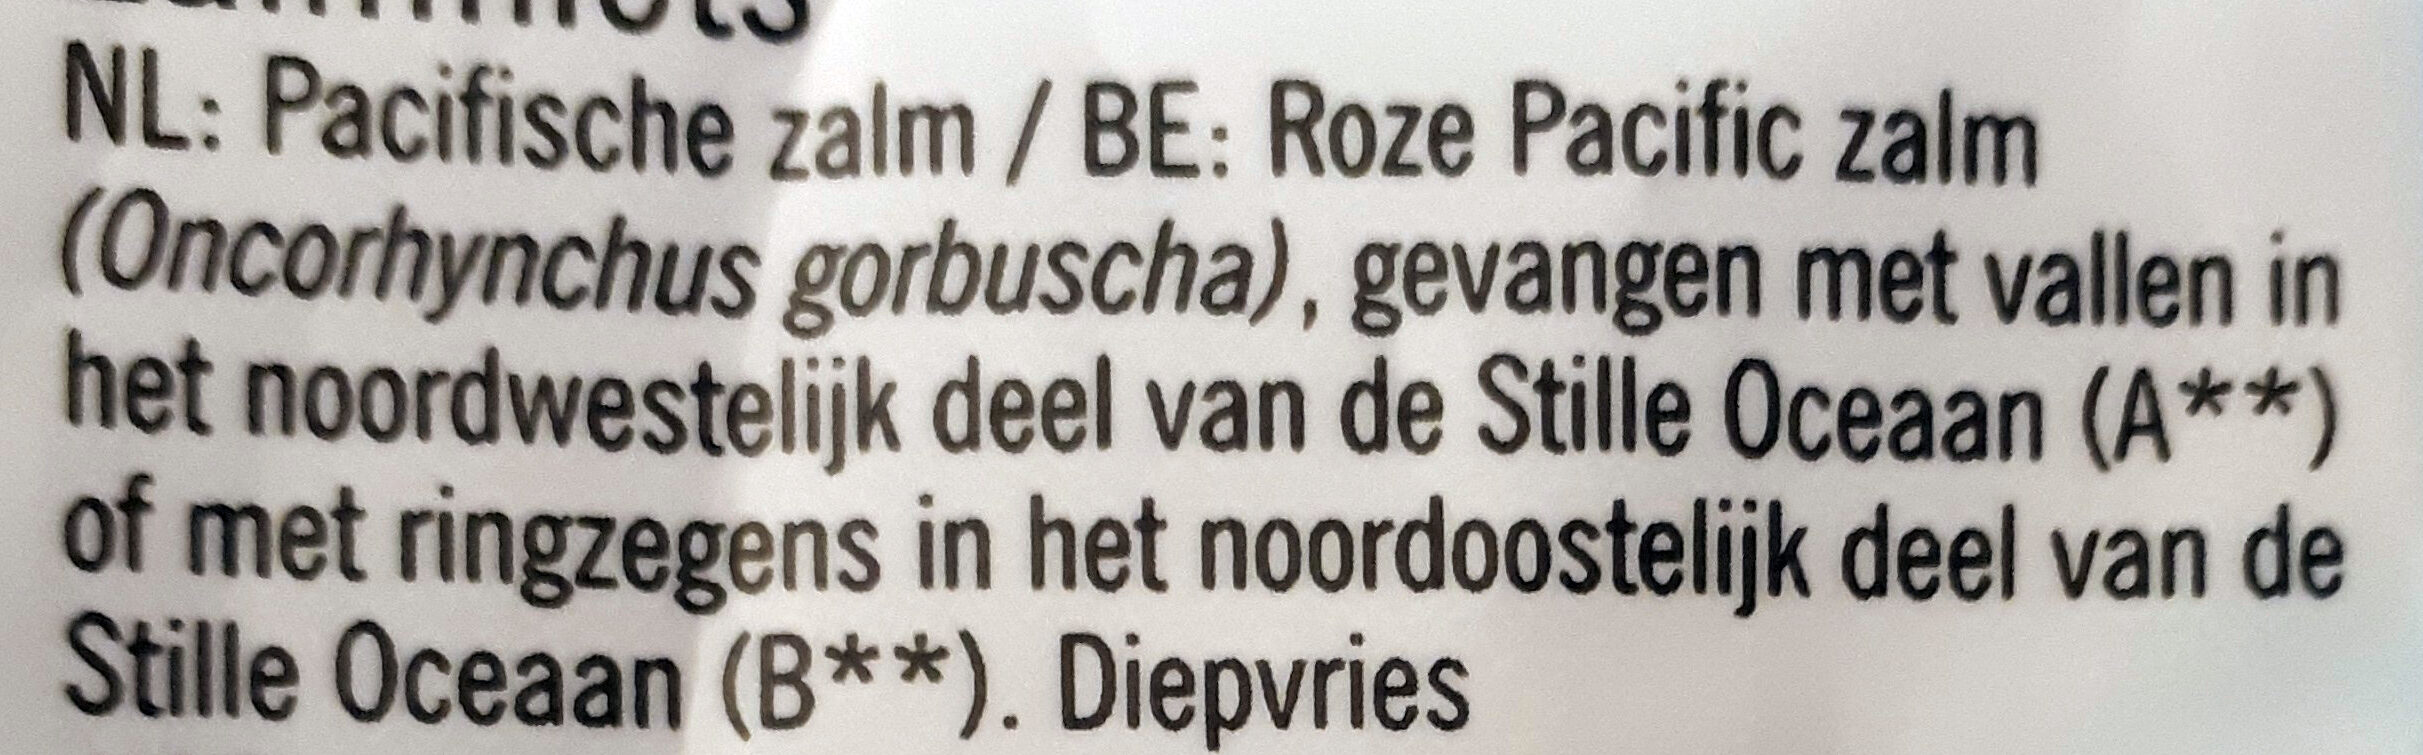 Wilde Zalm Filet Graatvrij Diepvries - Ingredienti - nl